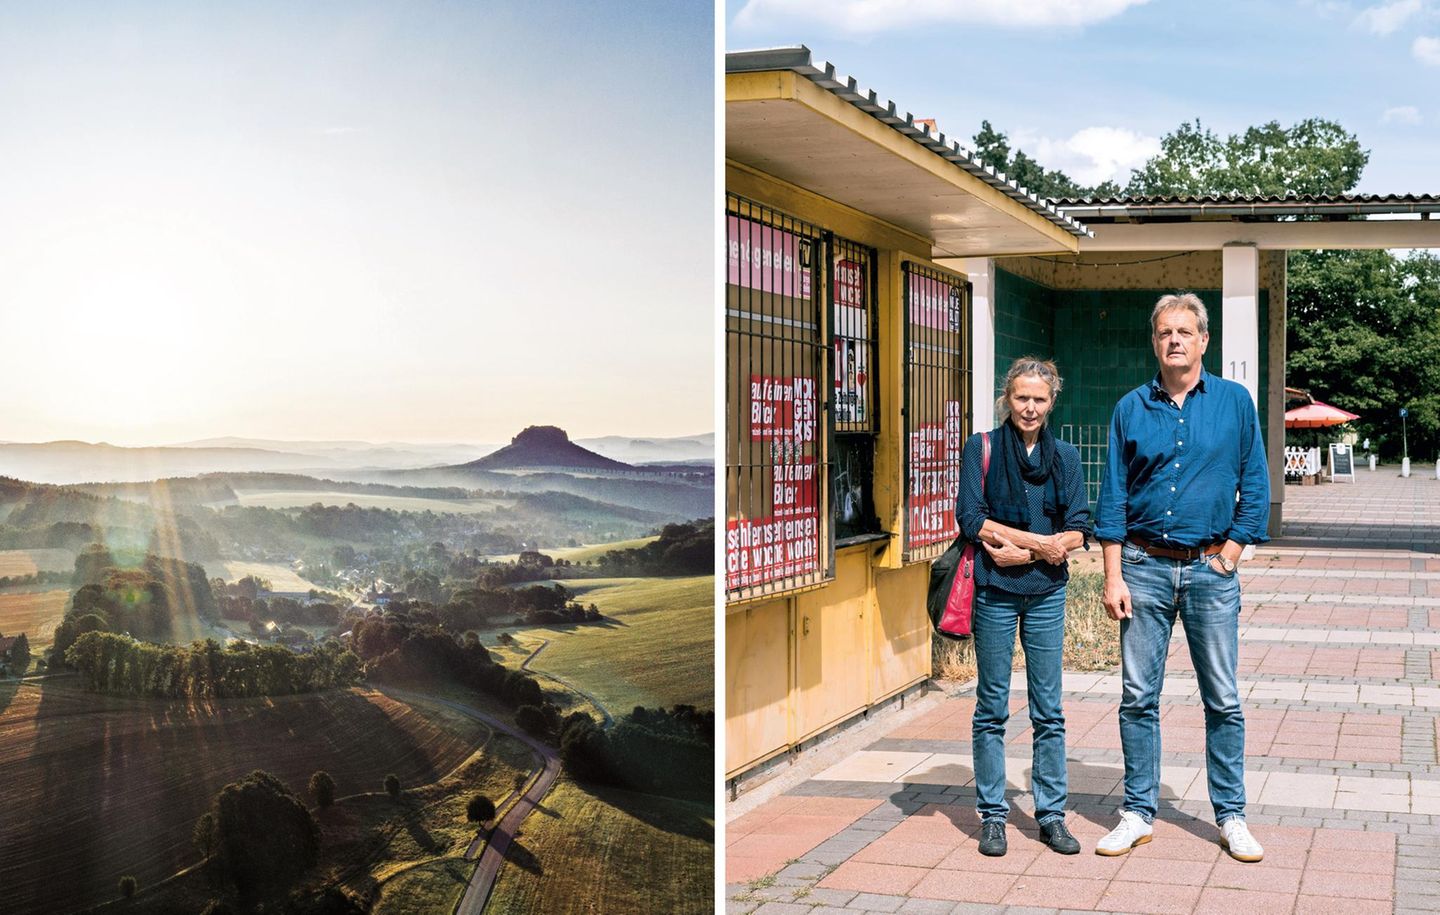 Blick in die Sächsische Schweiz; die Reporter Karin Großmann von der "Sächsischen Zeitung" und Axel Vornbäumen vom stern